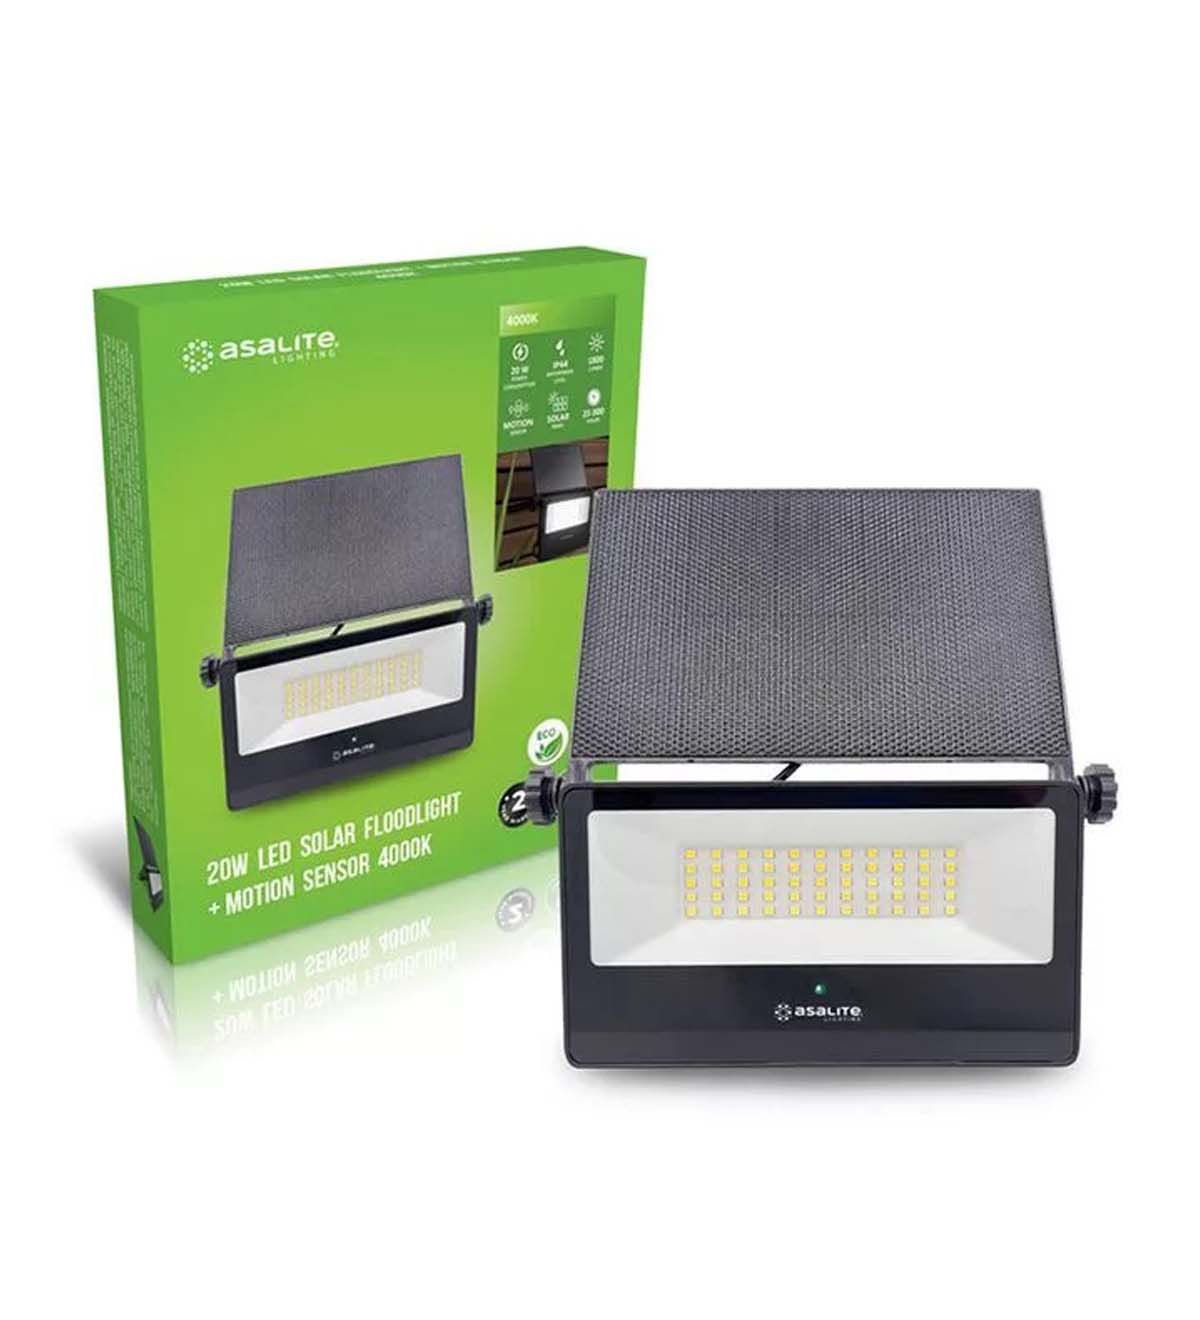 Asalite LED Szolár Kültéri Reflektor Slim 20W 4000K (1800 lumen) + Mozgásérzékelő Szenzor